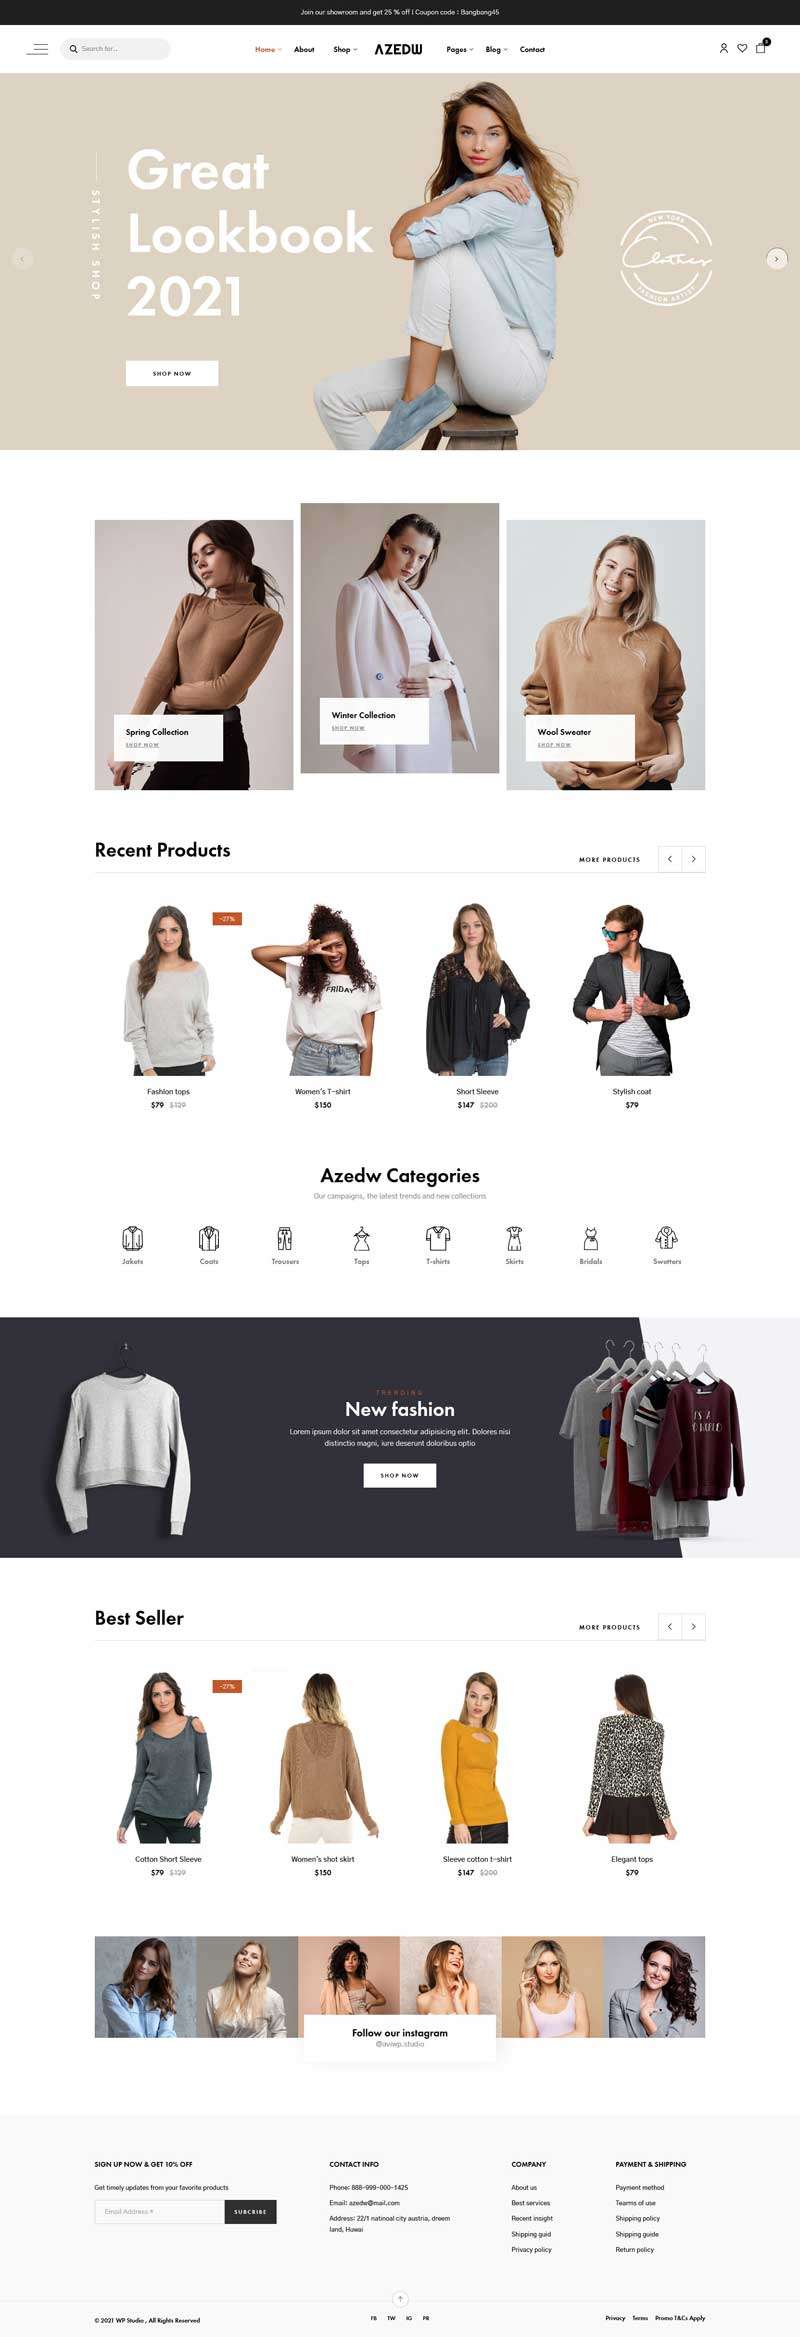 时尚服装店铺网站HTML模板